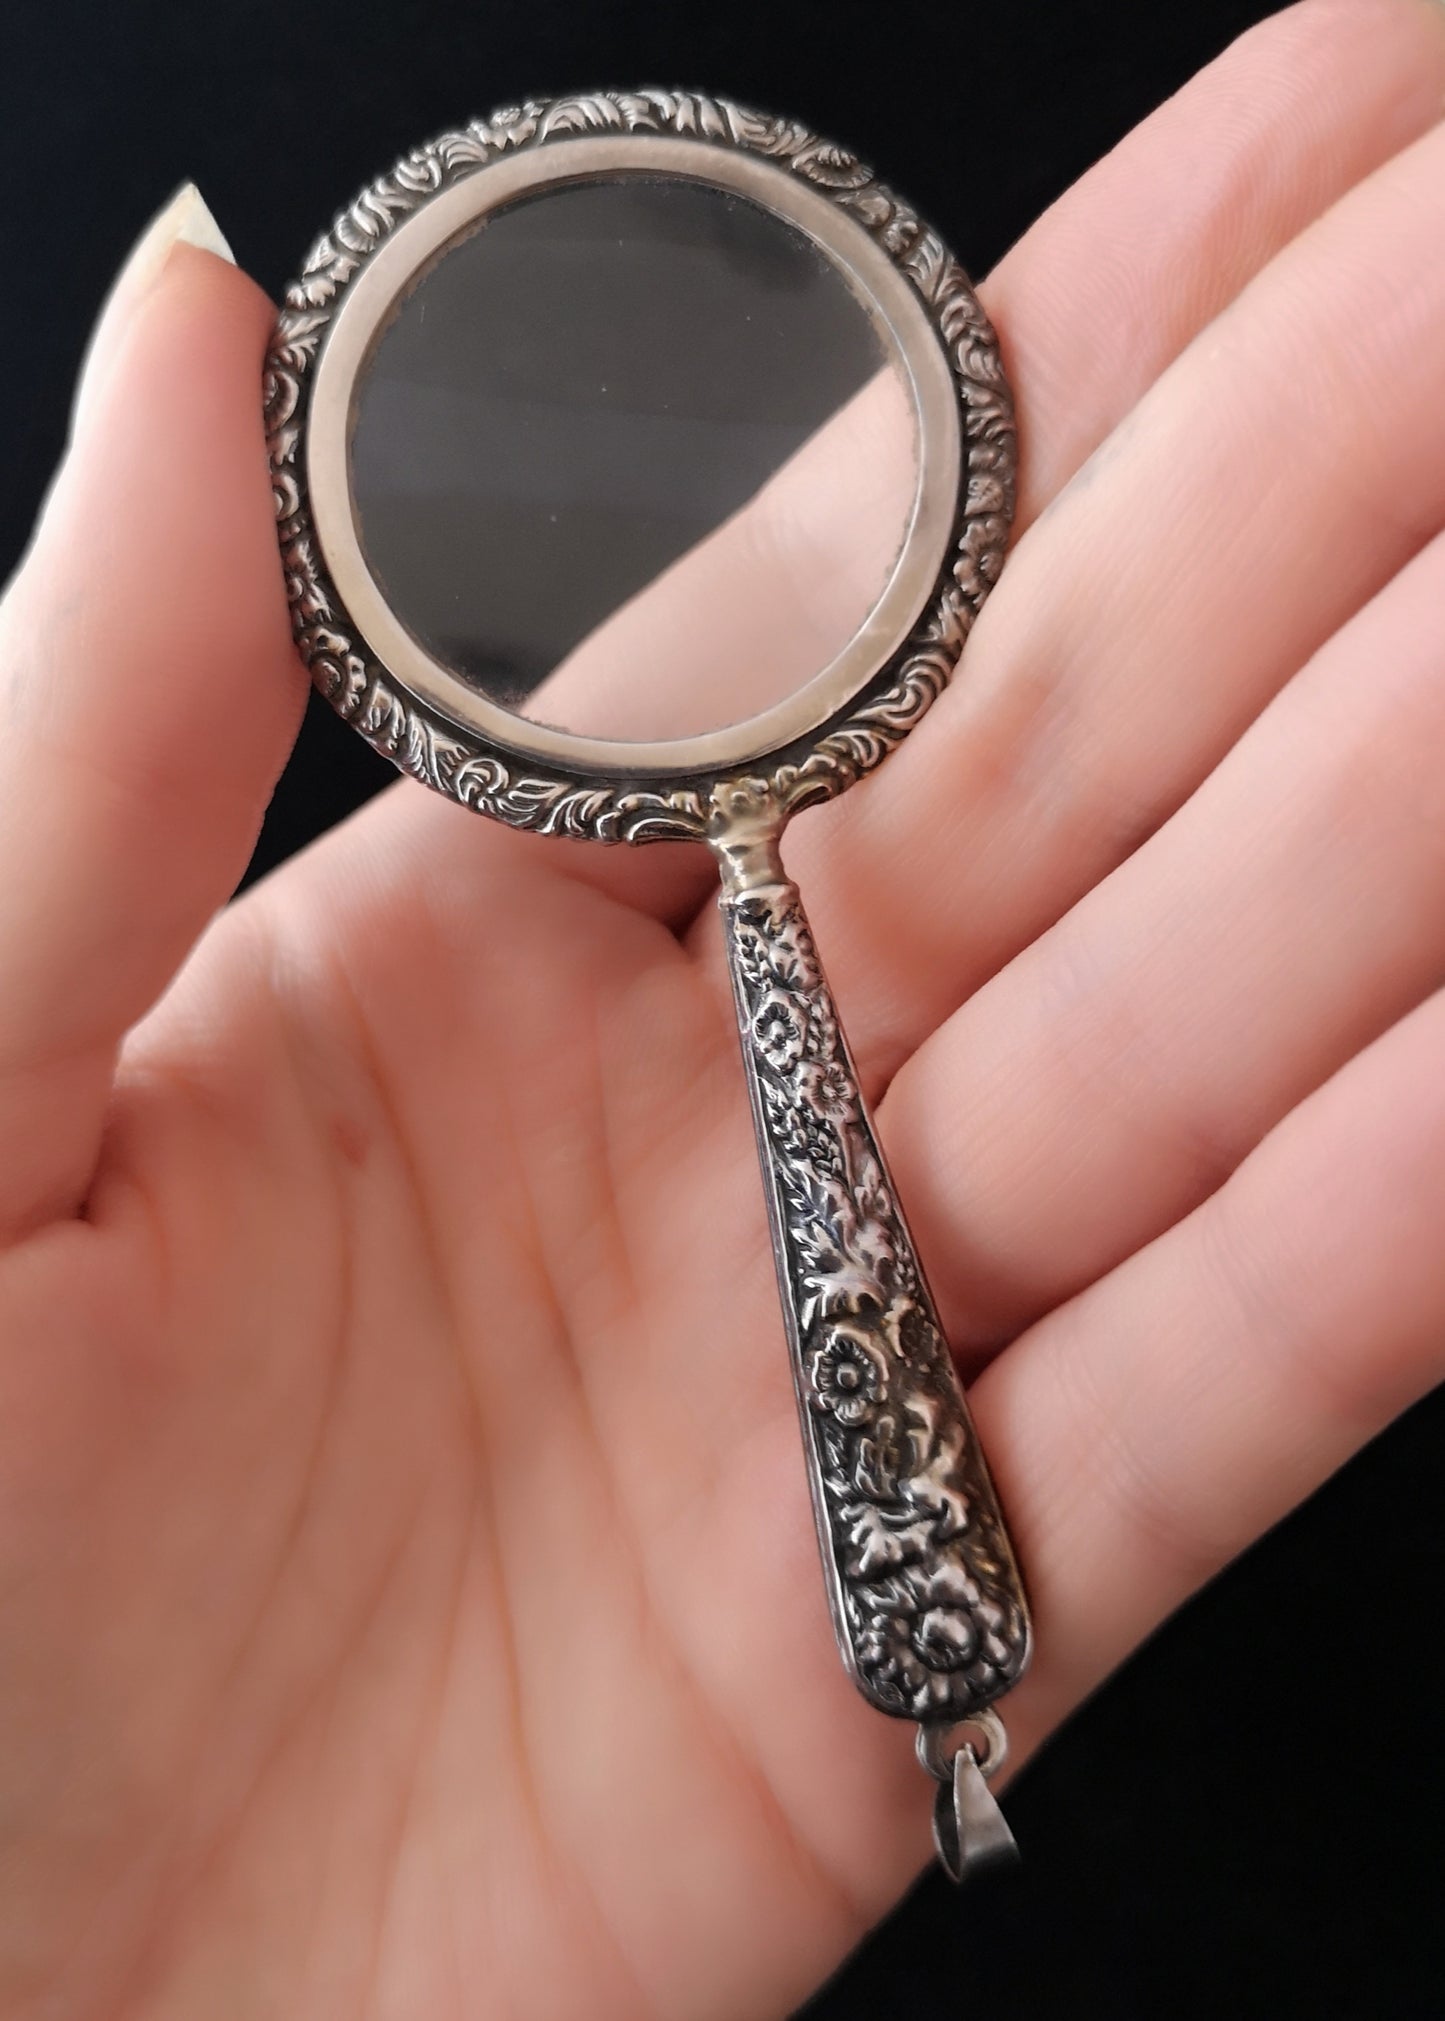 Antique silver magnifying glass pendant, Art Nouveau